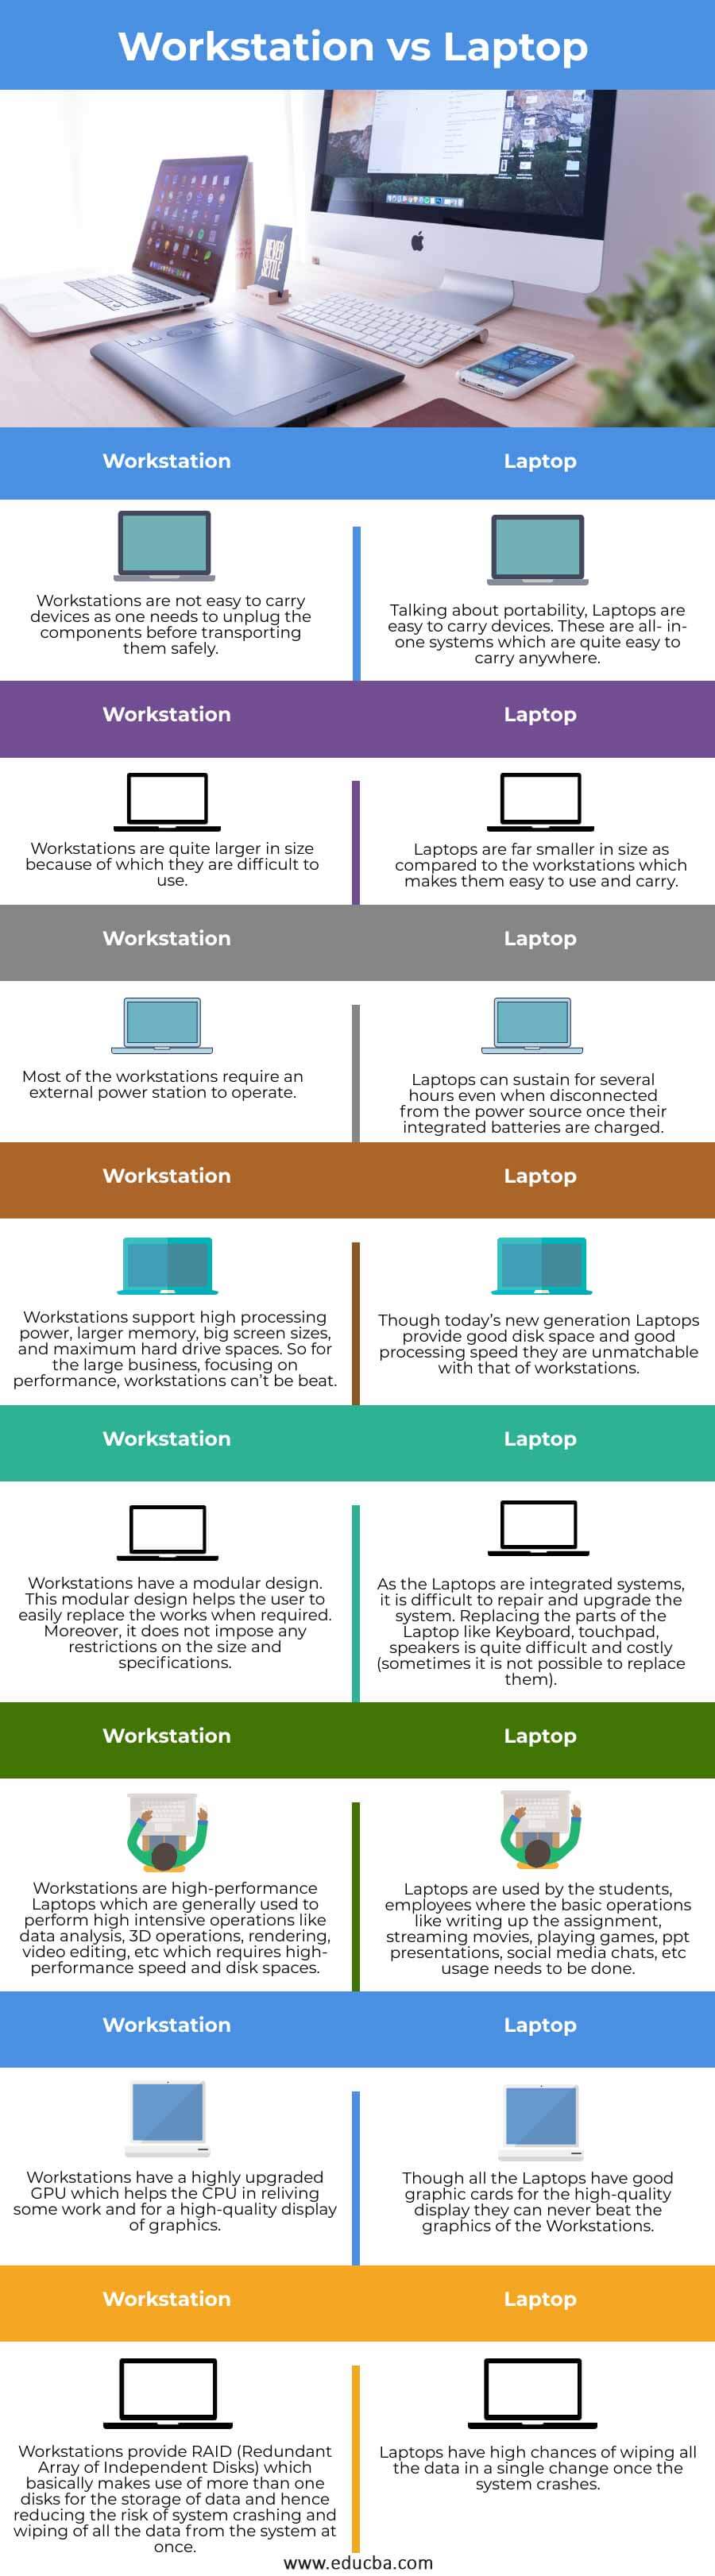 Workstation-vs-Laptop-info